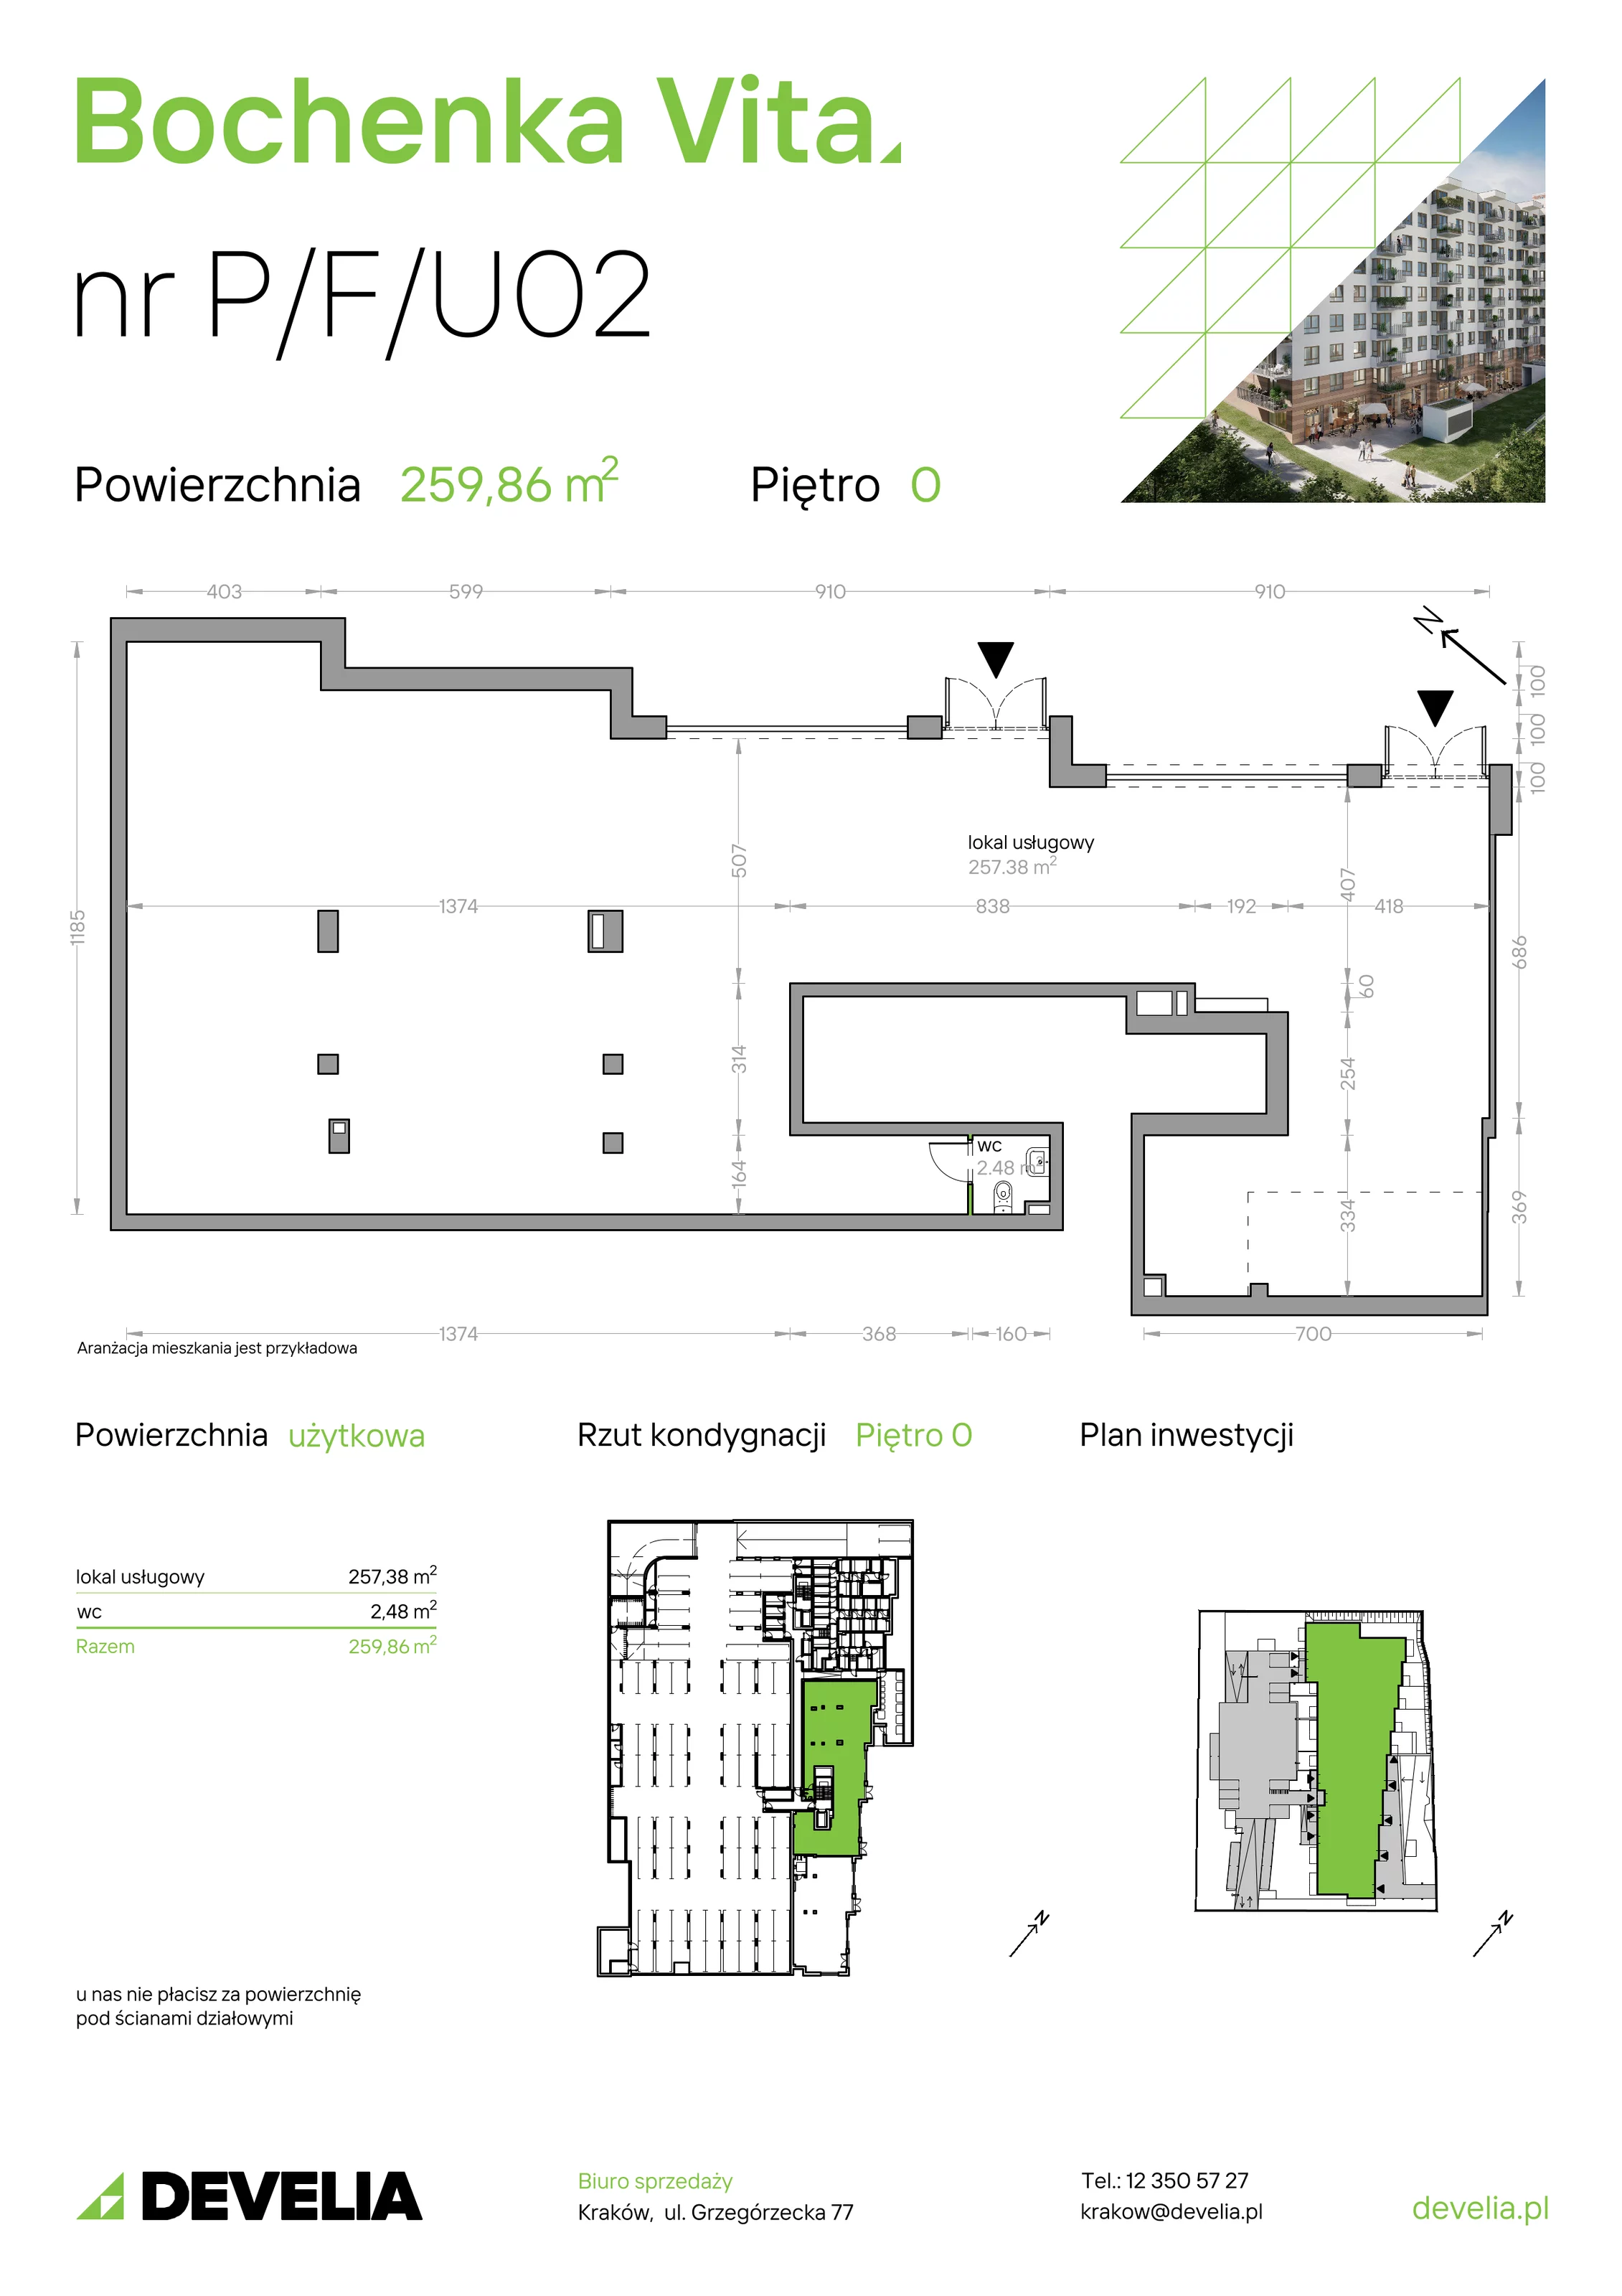 Lokal użytkowy 259,86 m², oferta nr P/F/U02, Bochenka Vita, Kraków, Podgórze, ul. Bochenka